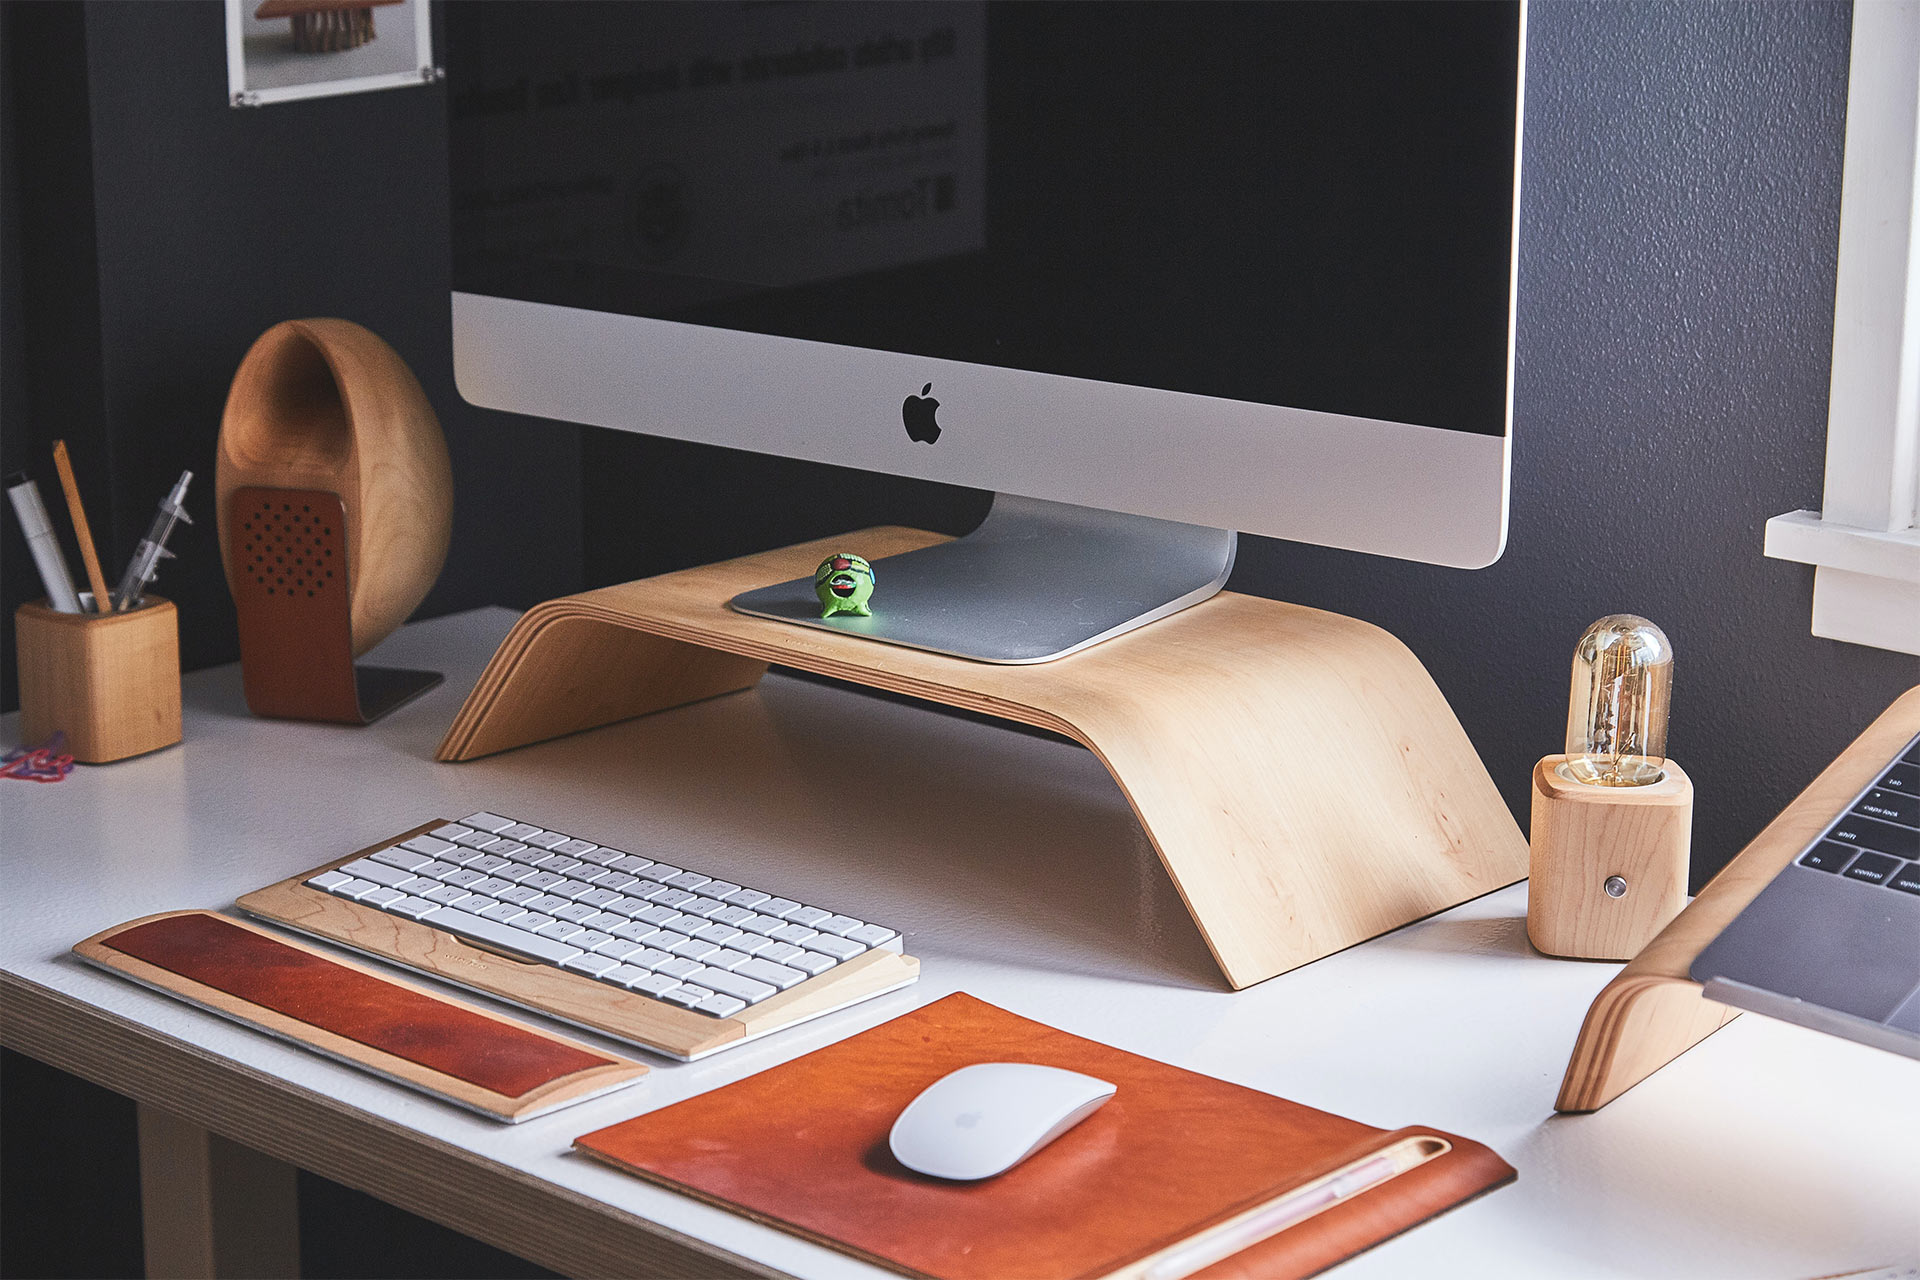 Foto monitor iMac pada dudukan kayu di atas meja dengan keyboard dan mouse nirkabel.